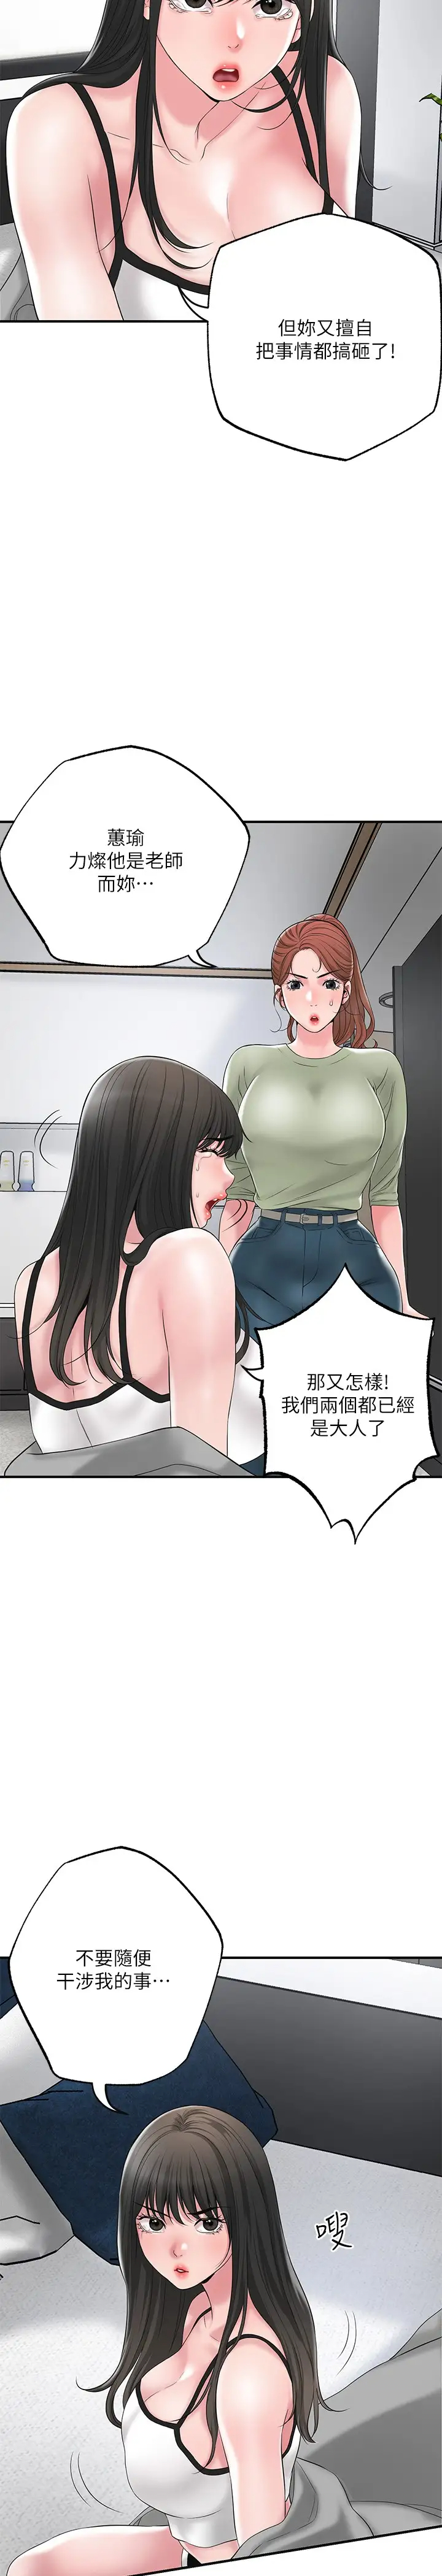 韩国污漫画 幸福督市 第46话 主动脱光光的雅蓝 7